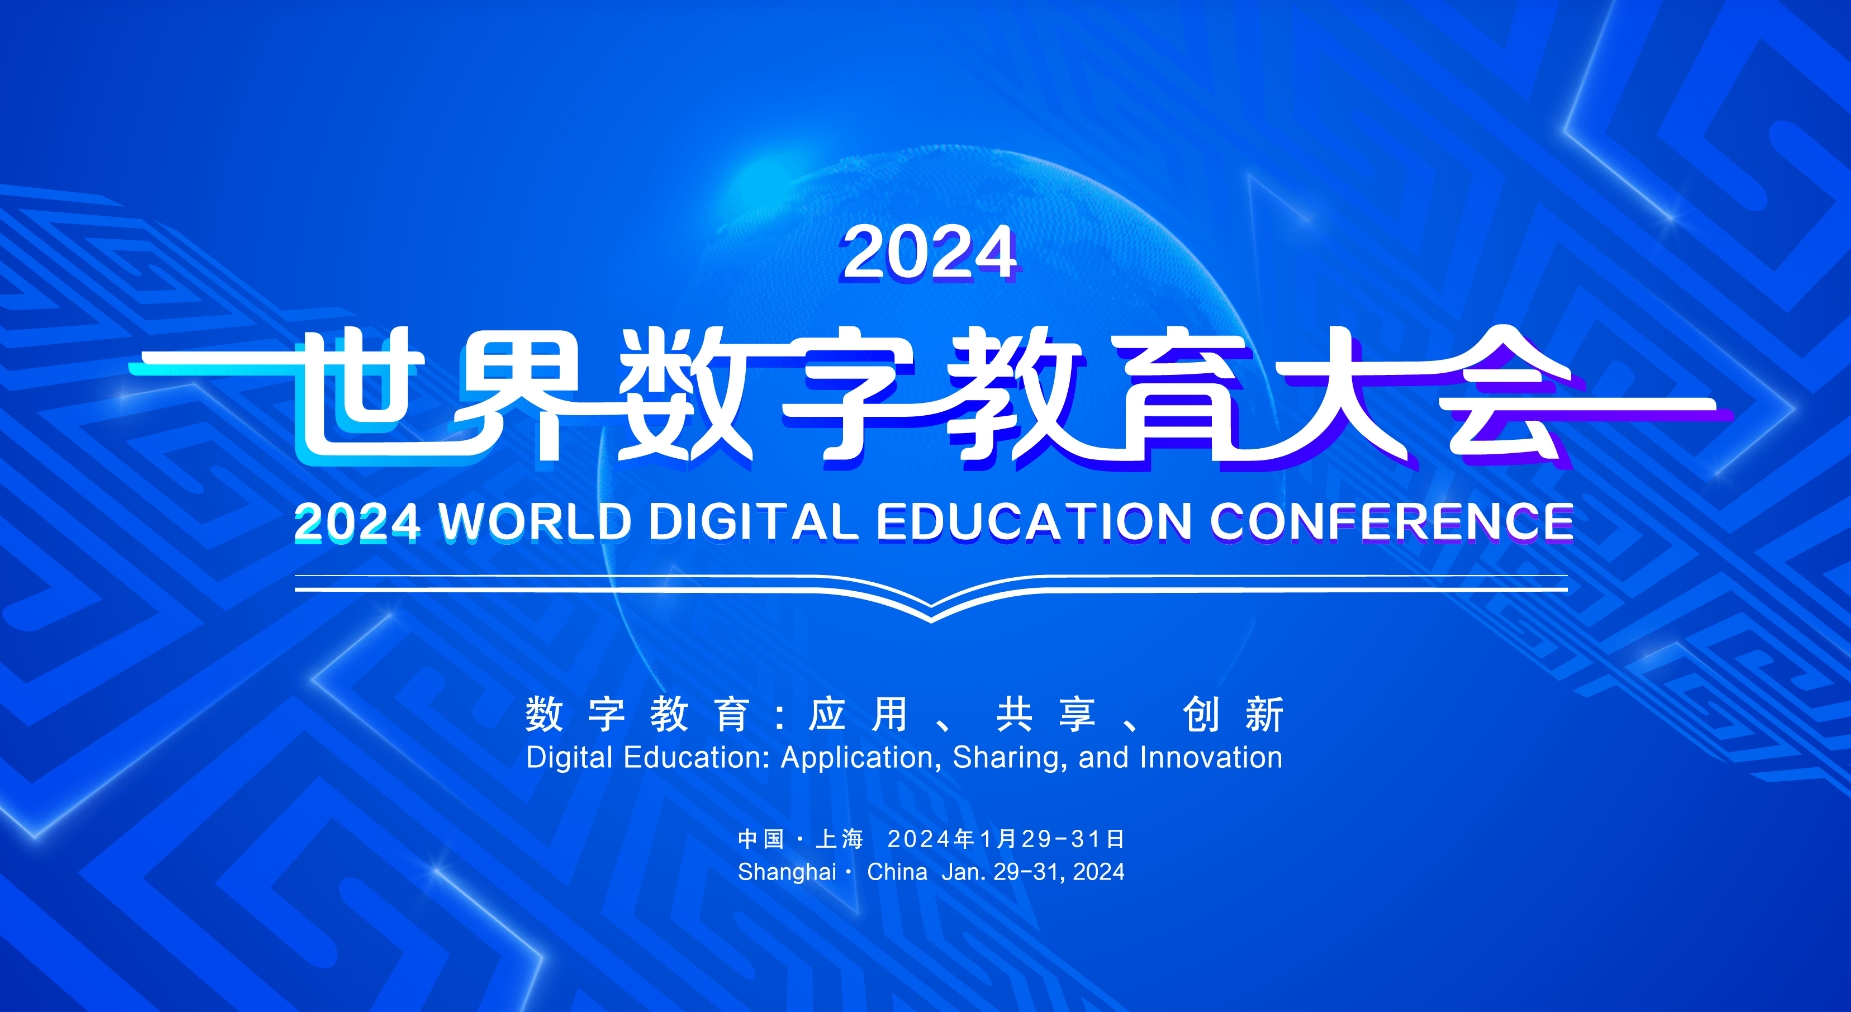 2024世界数字教育大会将于1月29日至31日在上海举办